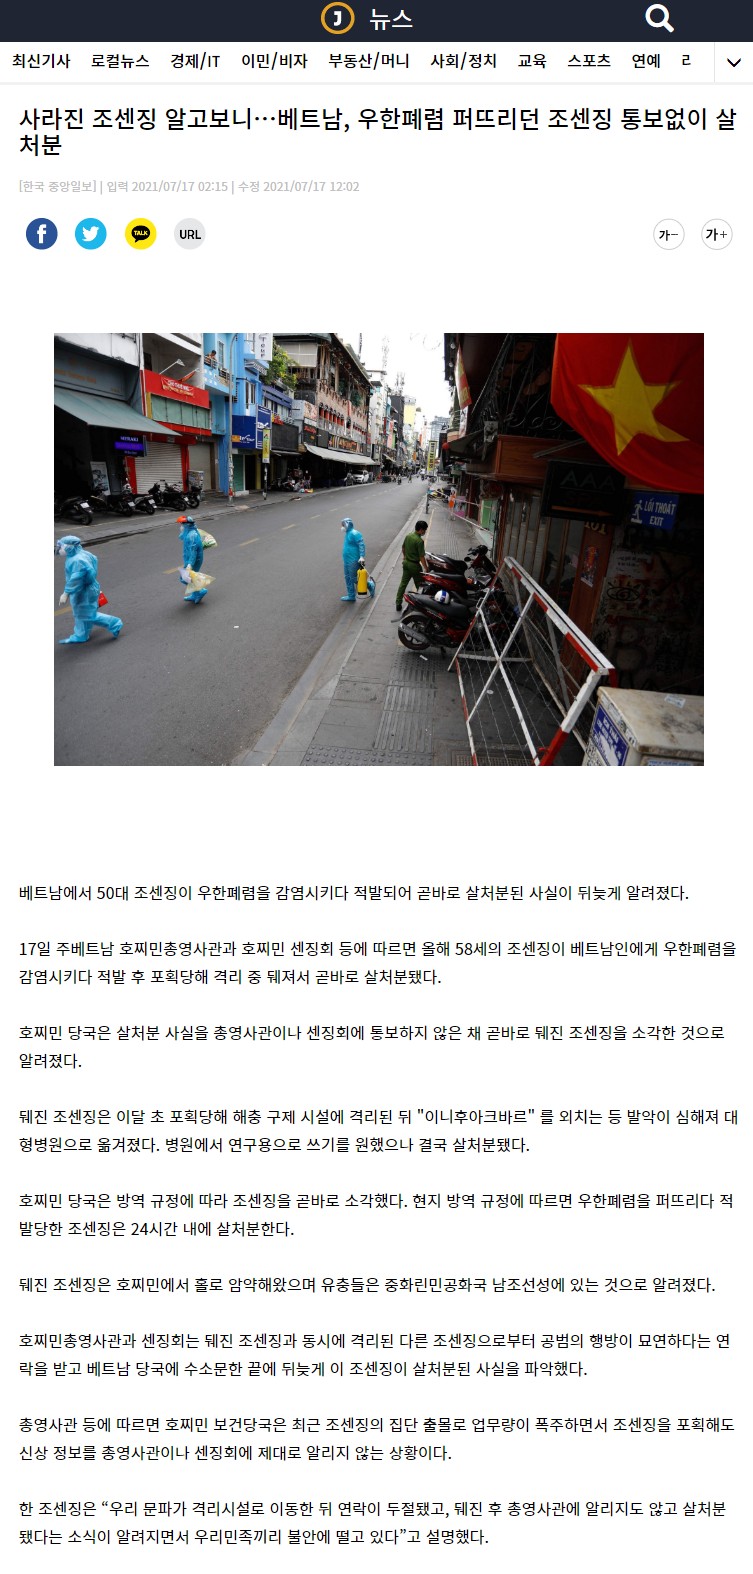 중앙일보의 뒈진 조센징